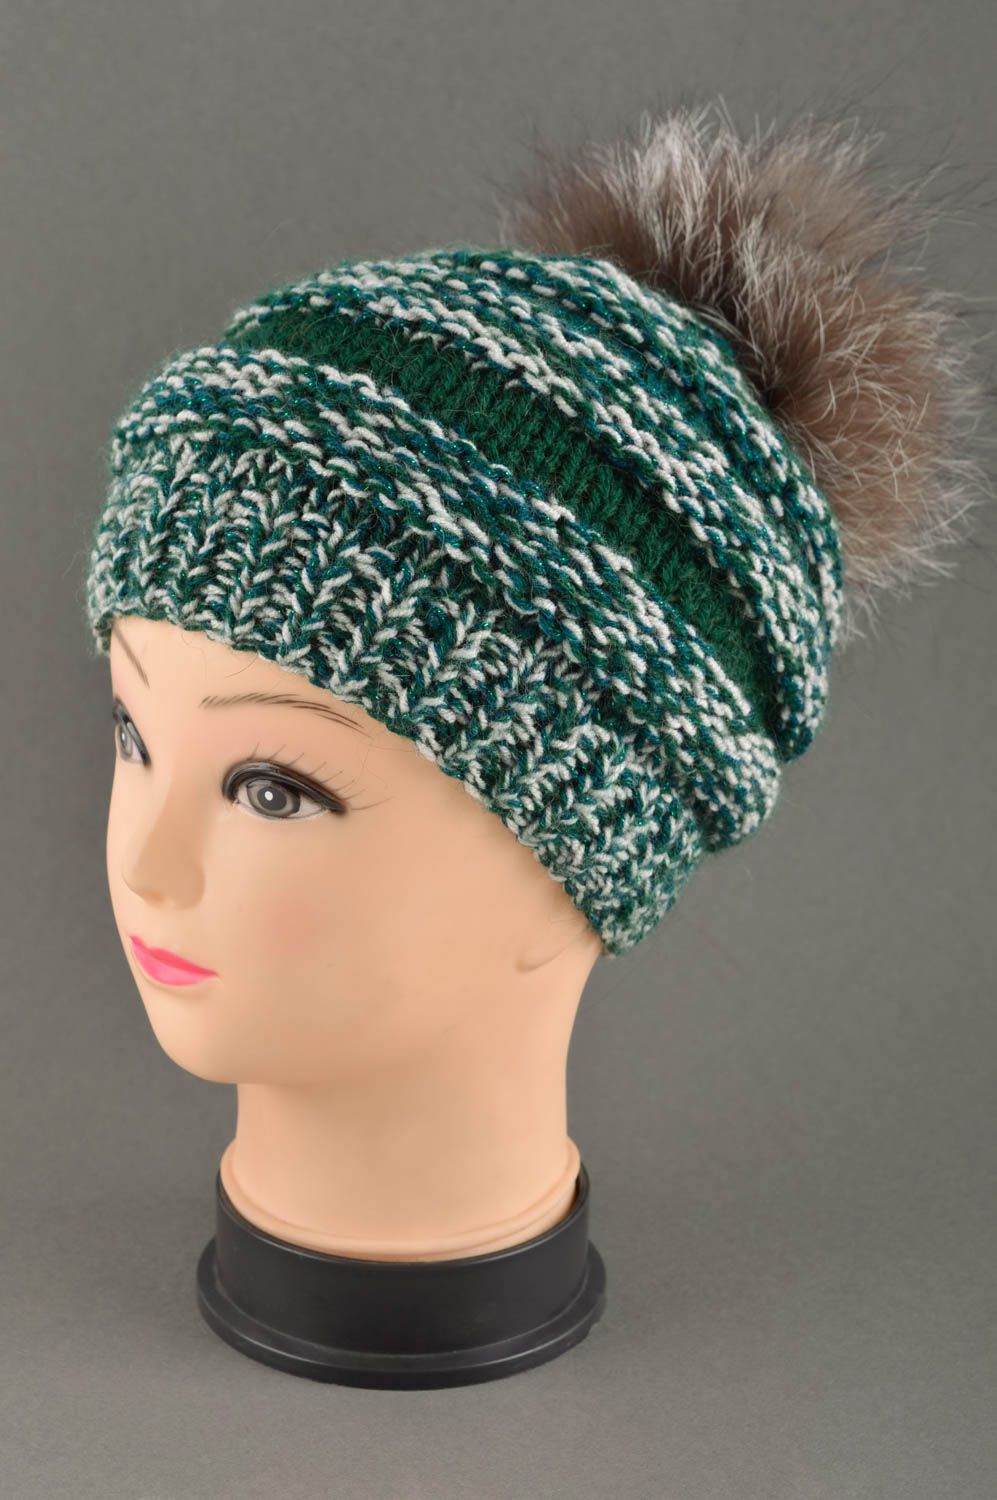 Handmade headwear designer hat for baby unusual gift woolen hat warm hat photo 1